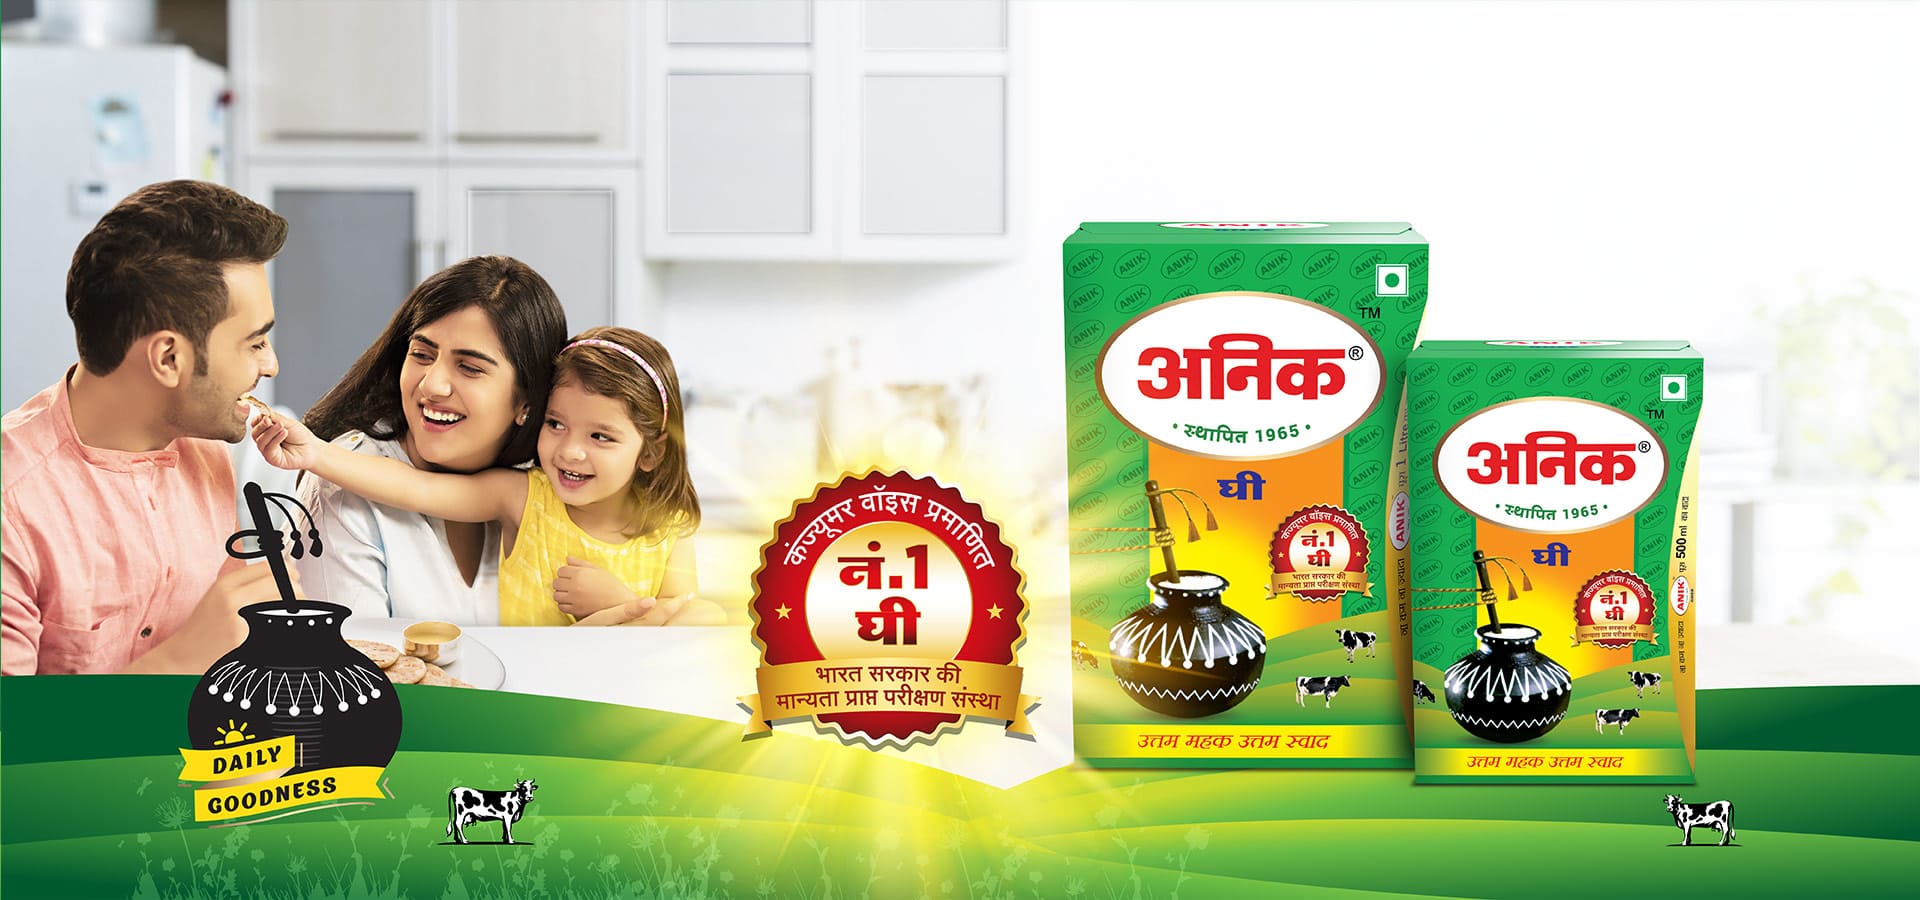 Best Cow Ghee Brand in India Anik Ghee - Anik Dairy